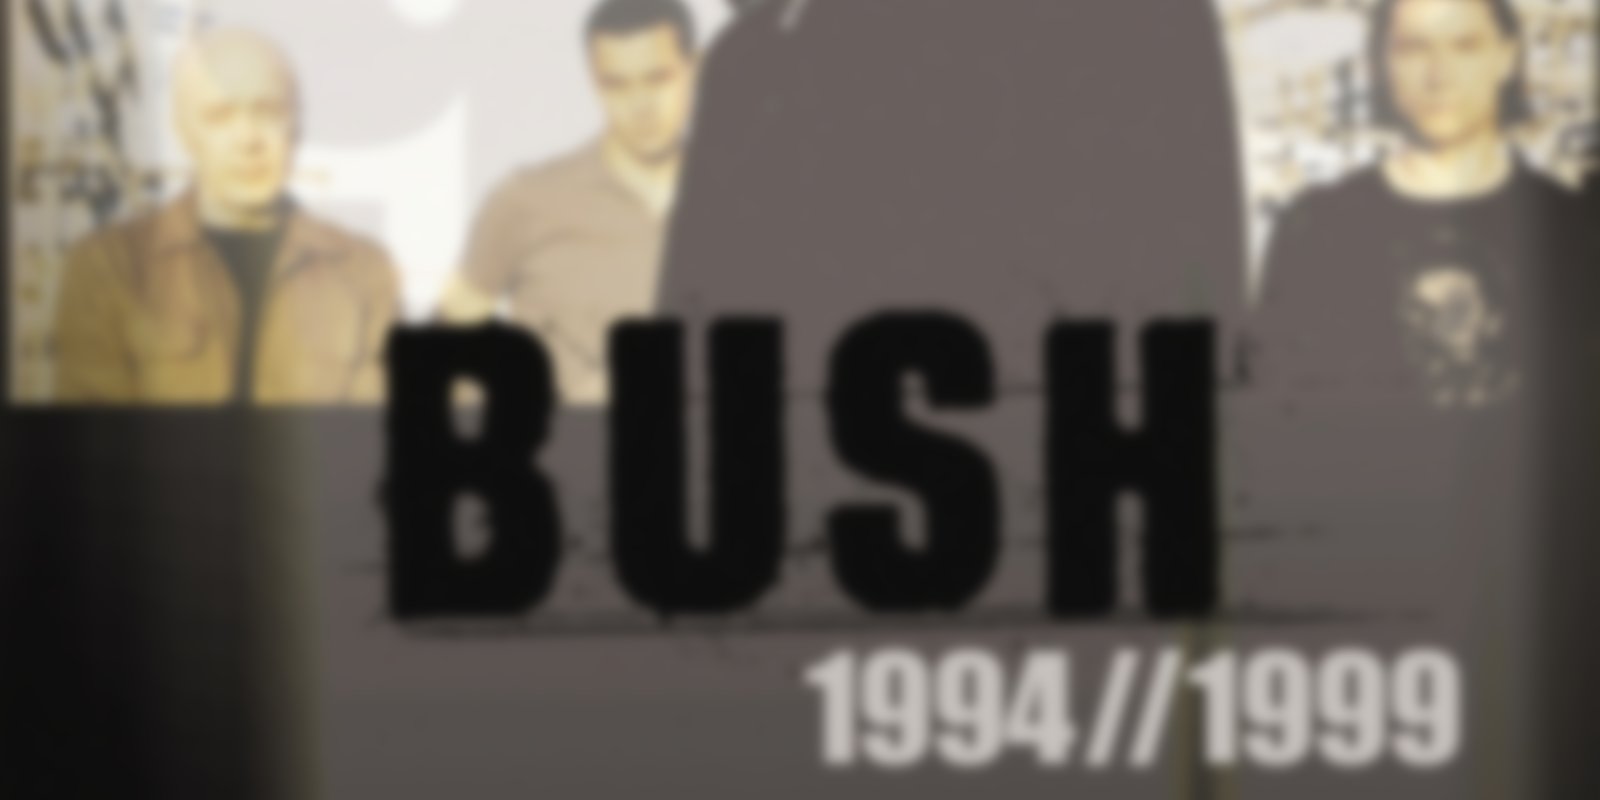 Bush - 1994 & 1999